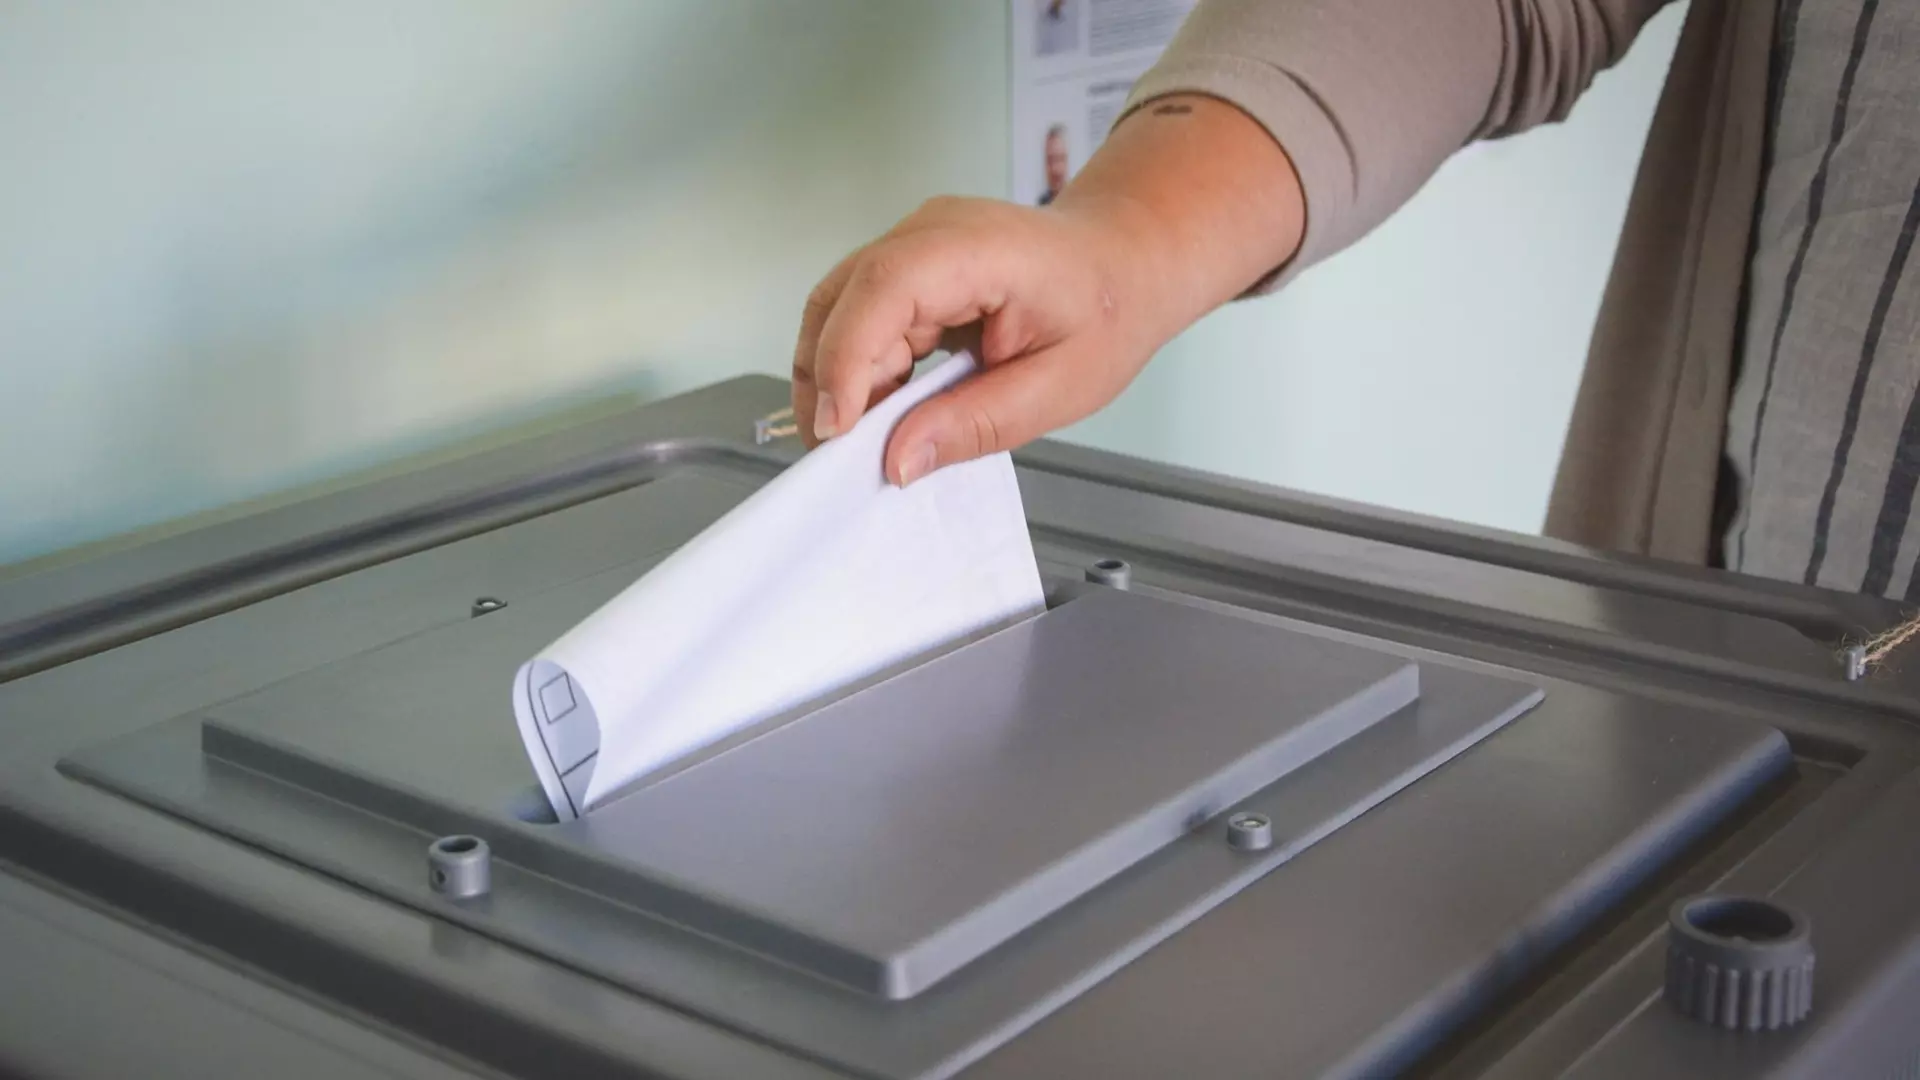 Власти Пятигорска рассказали об участке, где могут голосовать слабовидящие